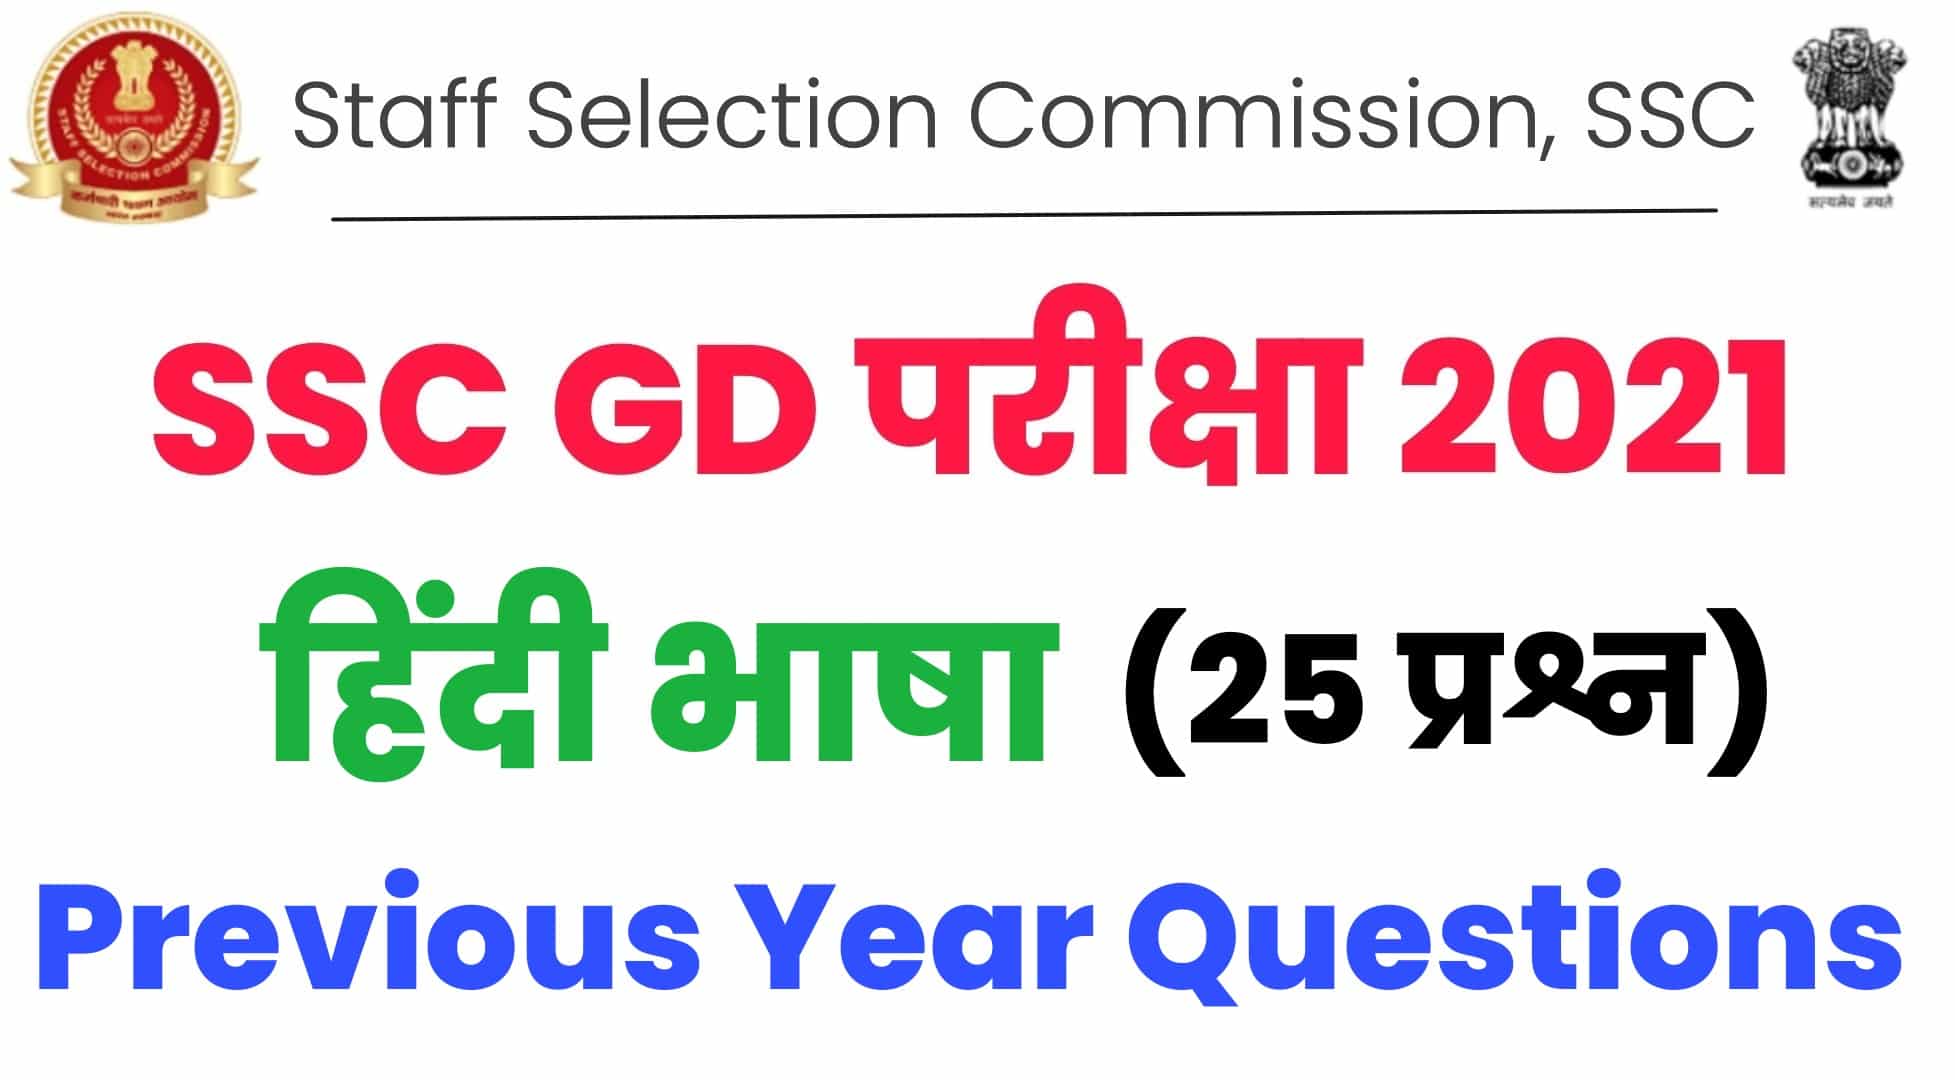 SSC GD परीक्षा में हिंदी भाषा में पूछे गए पिछले वर्षों के प्रश्नों का संग्रह : परीक्षा में जाने से पहले अवश्य देखें